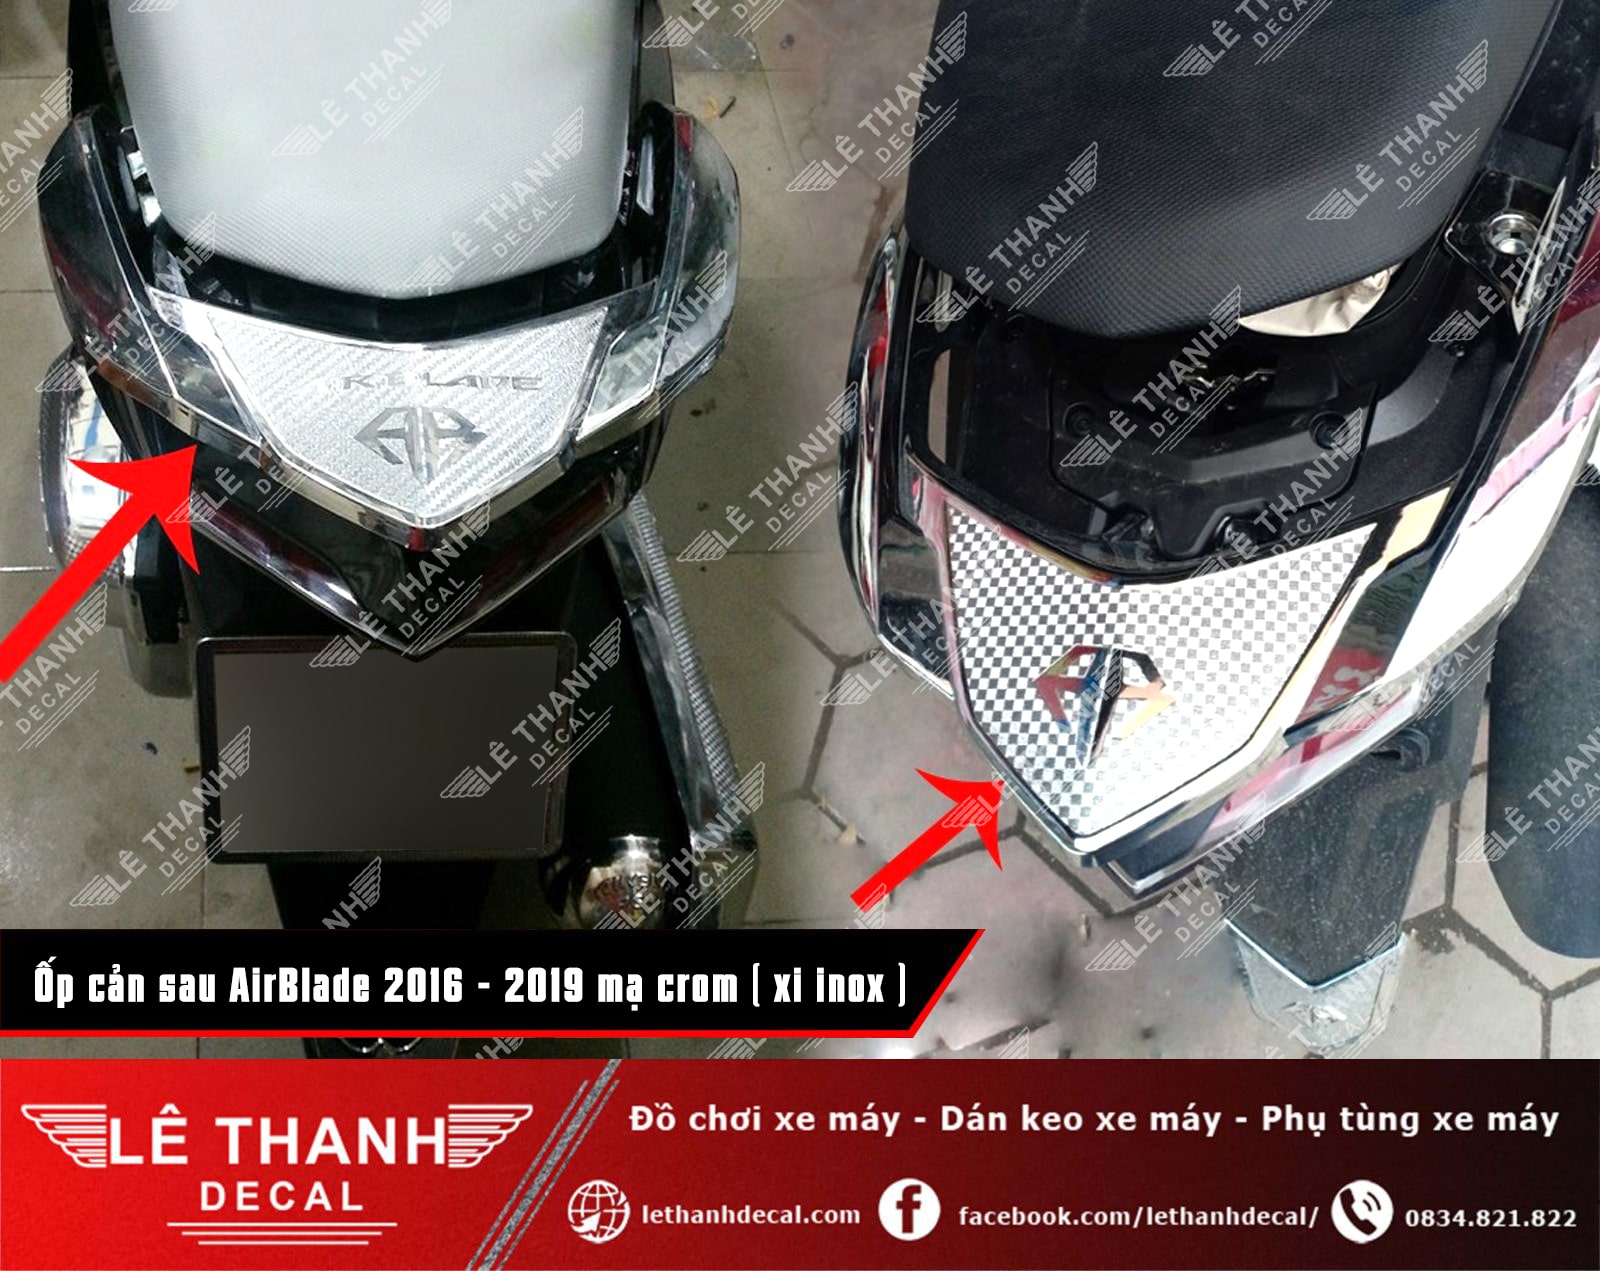 Tổng hợp, báo giá đồ chơi xe máy AirBlade 2016 - 2019 xi mạ crom